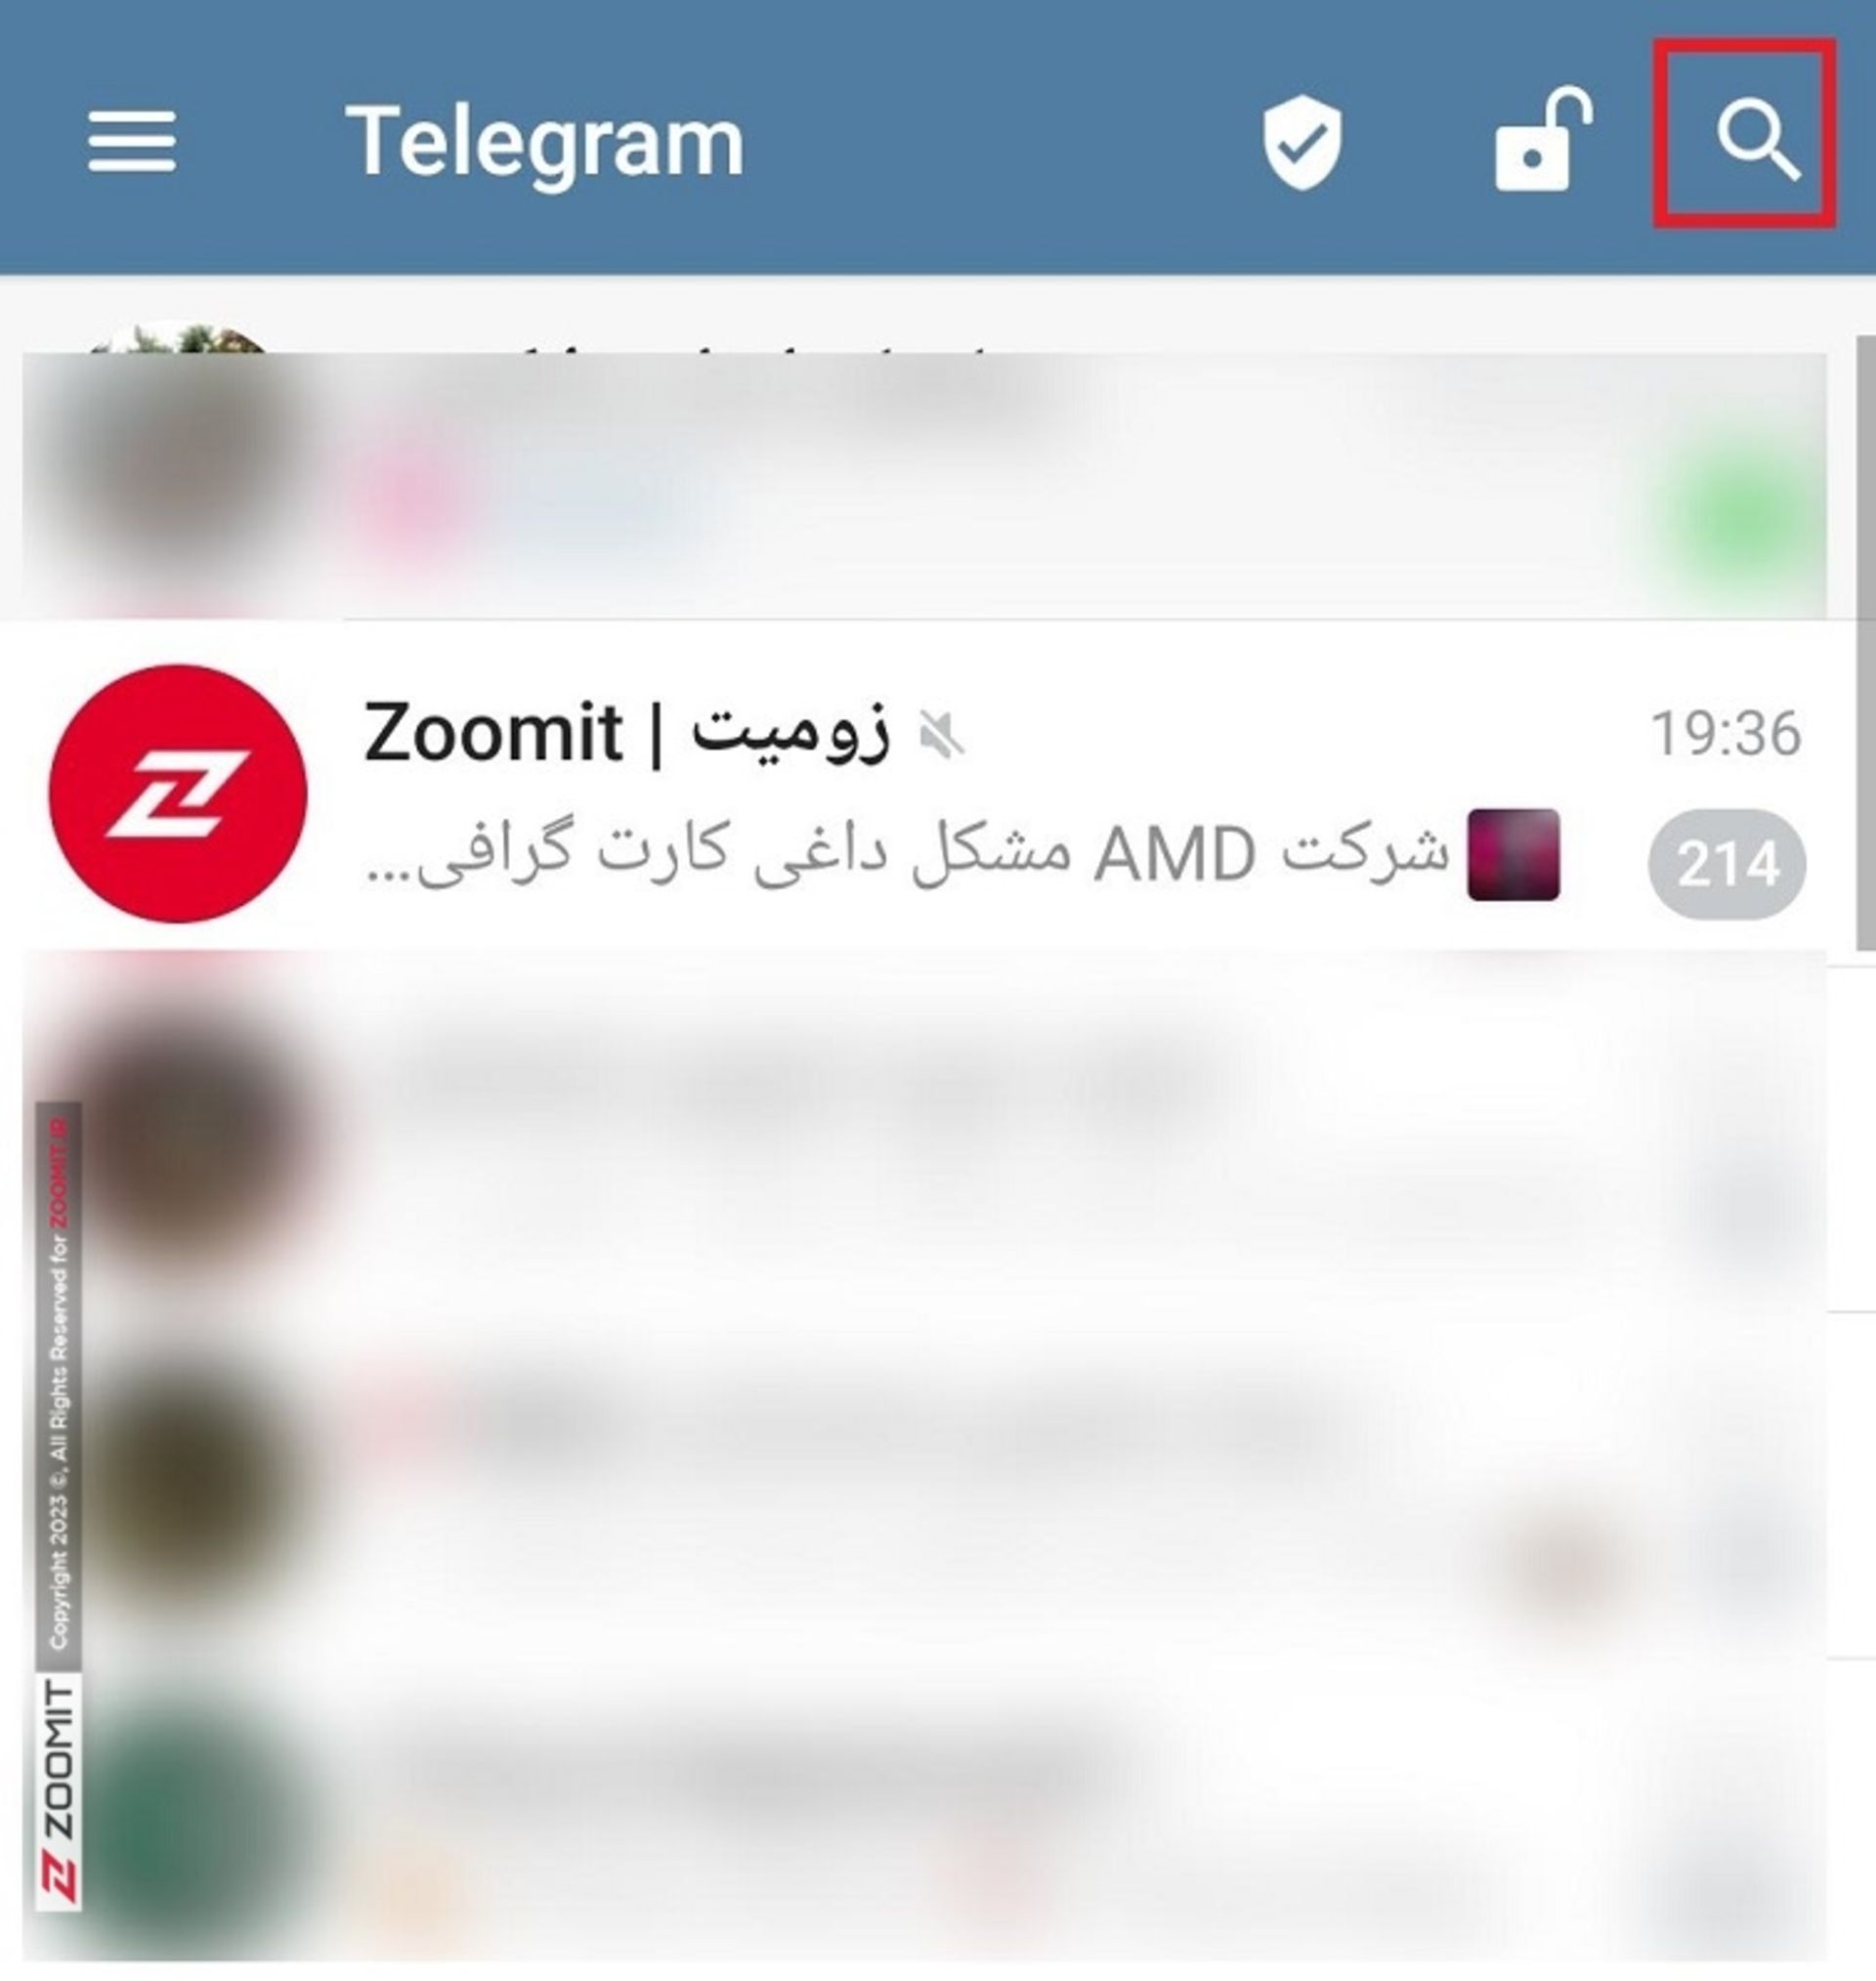 سرچ در تلگرام